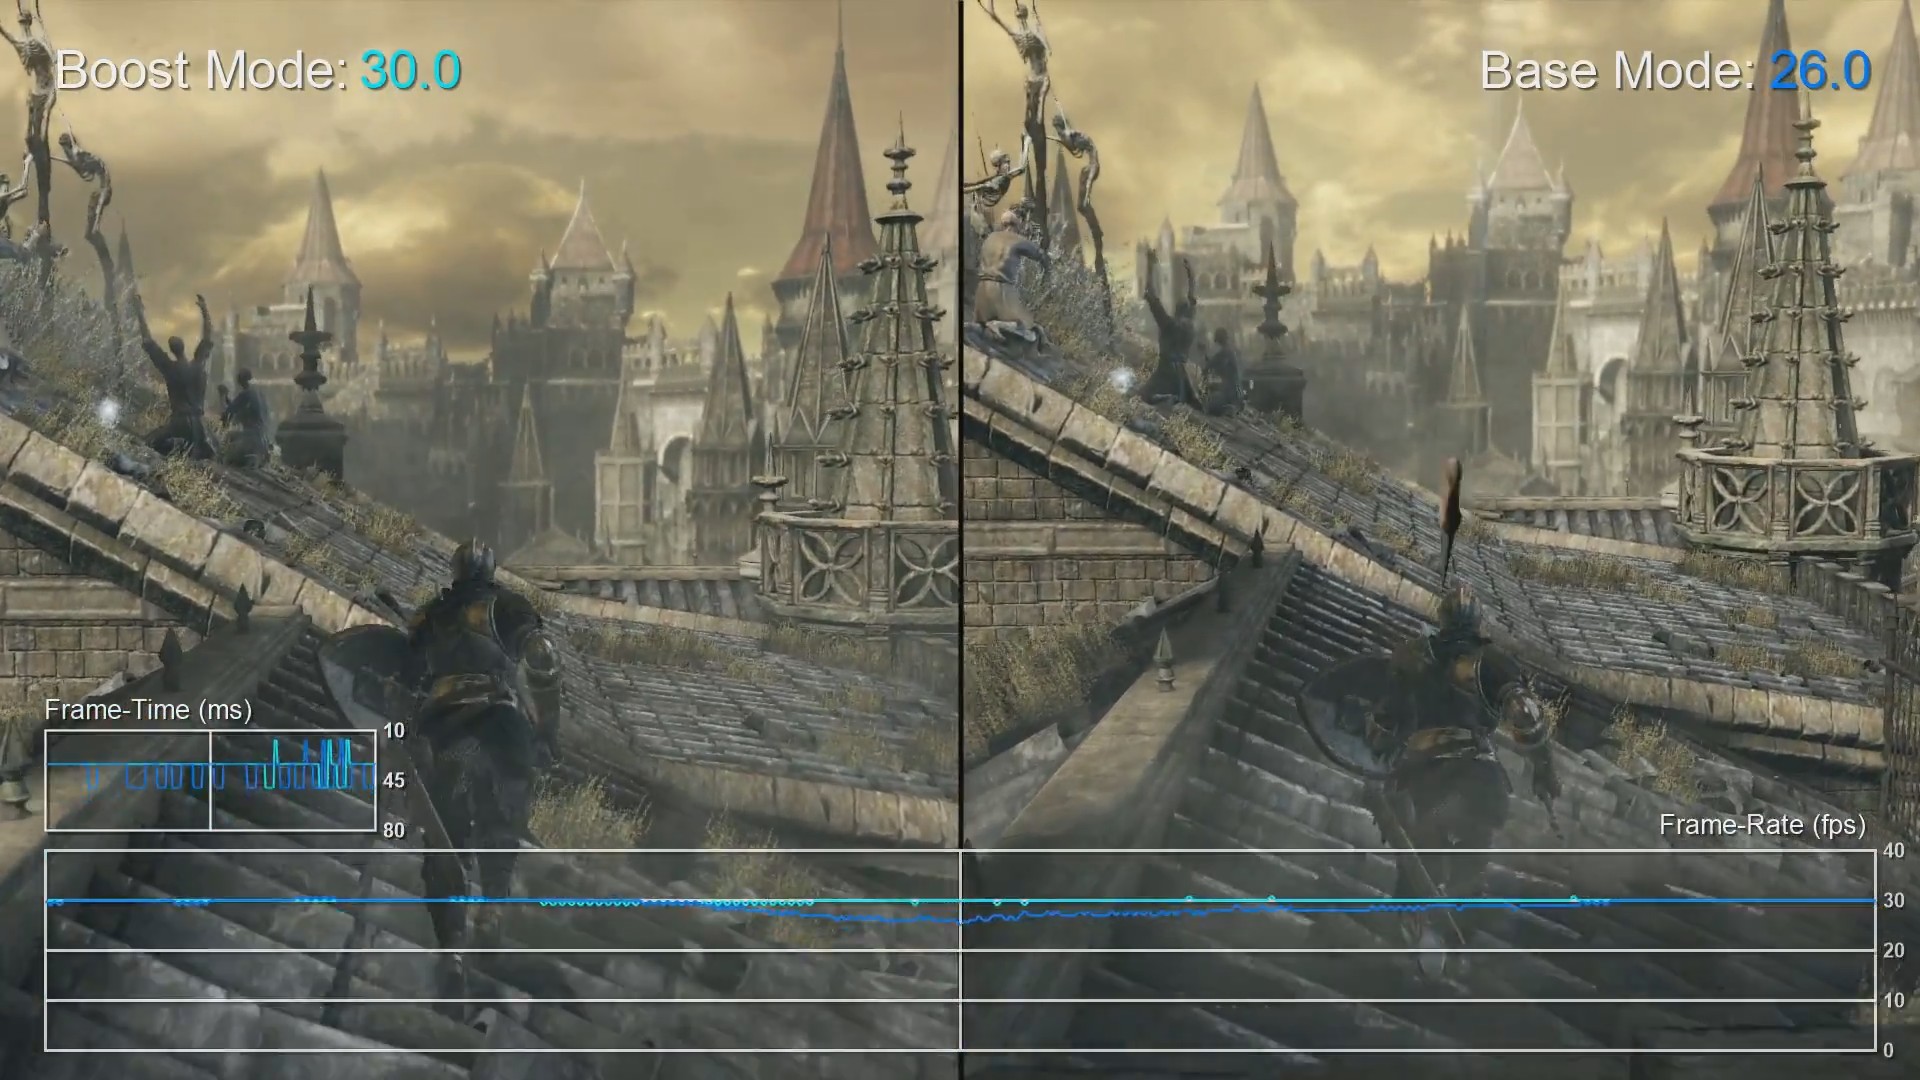 Ps4 Pro ブーストモードテスト映像 Bloodborne Dark Souls 2 3 Witcher 3 など多数のタイトルでパフォーマンスの変化を調査 ゲーム情報 ゲームのはなし